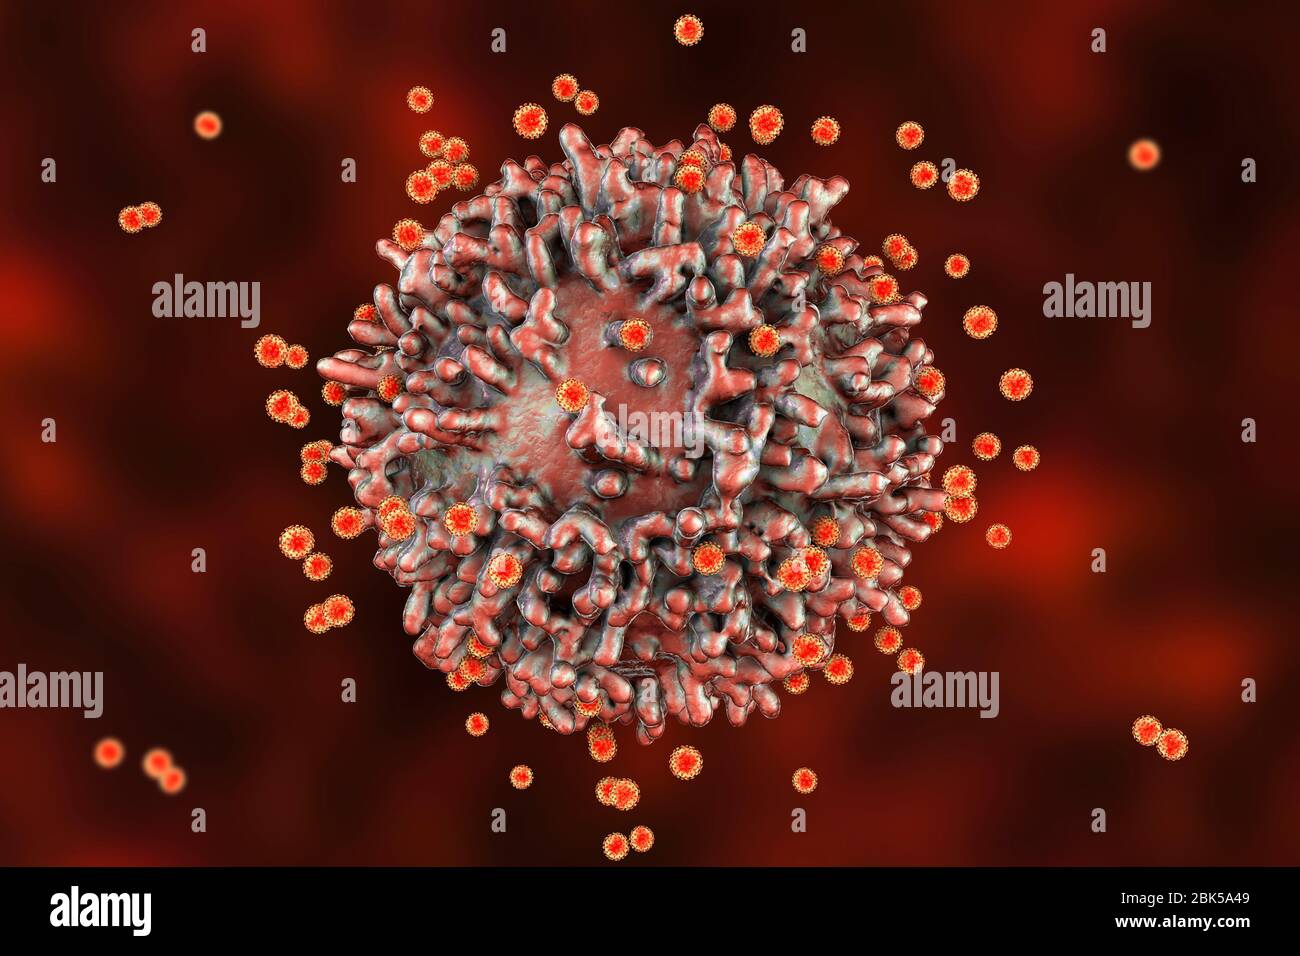 Virus du SRAS-COV-2 et cellule immunitaire. Image conceptuelle illustrant l'immunité antivirale et la vaccination. Banque D'Images